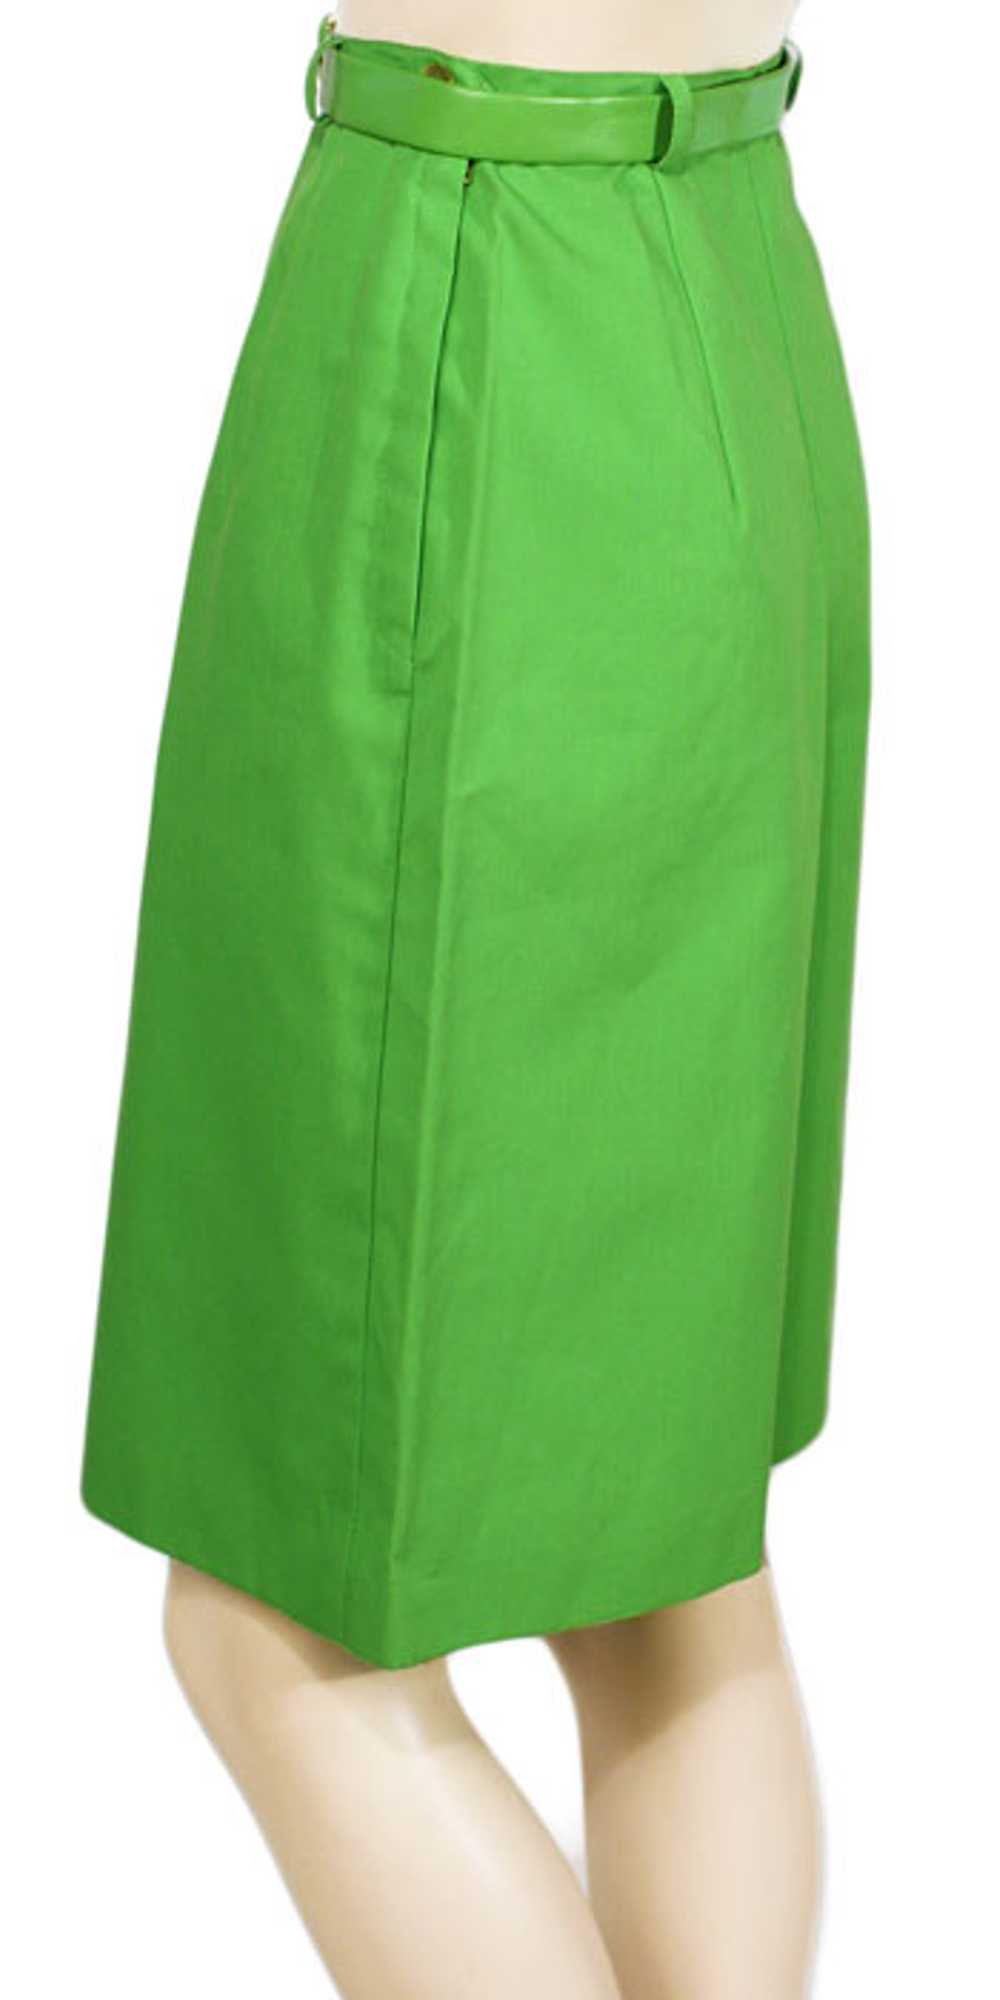 1960s Pant Skirt - image 3